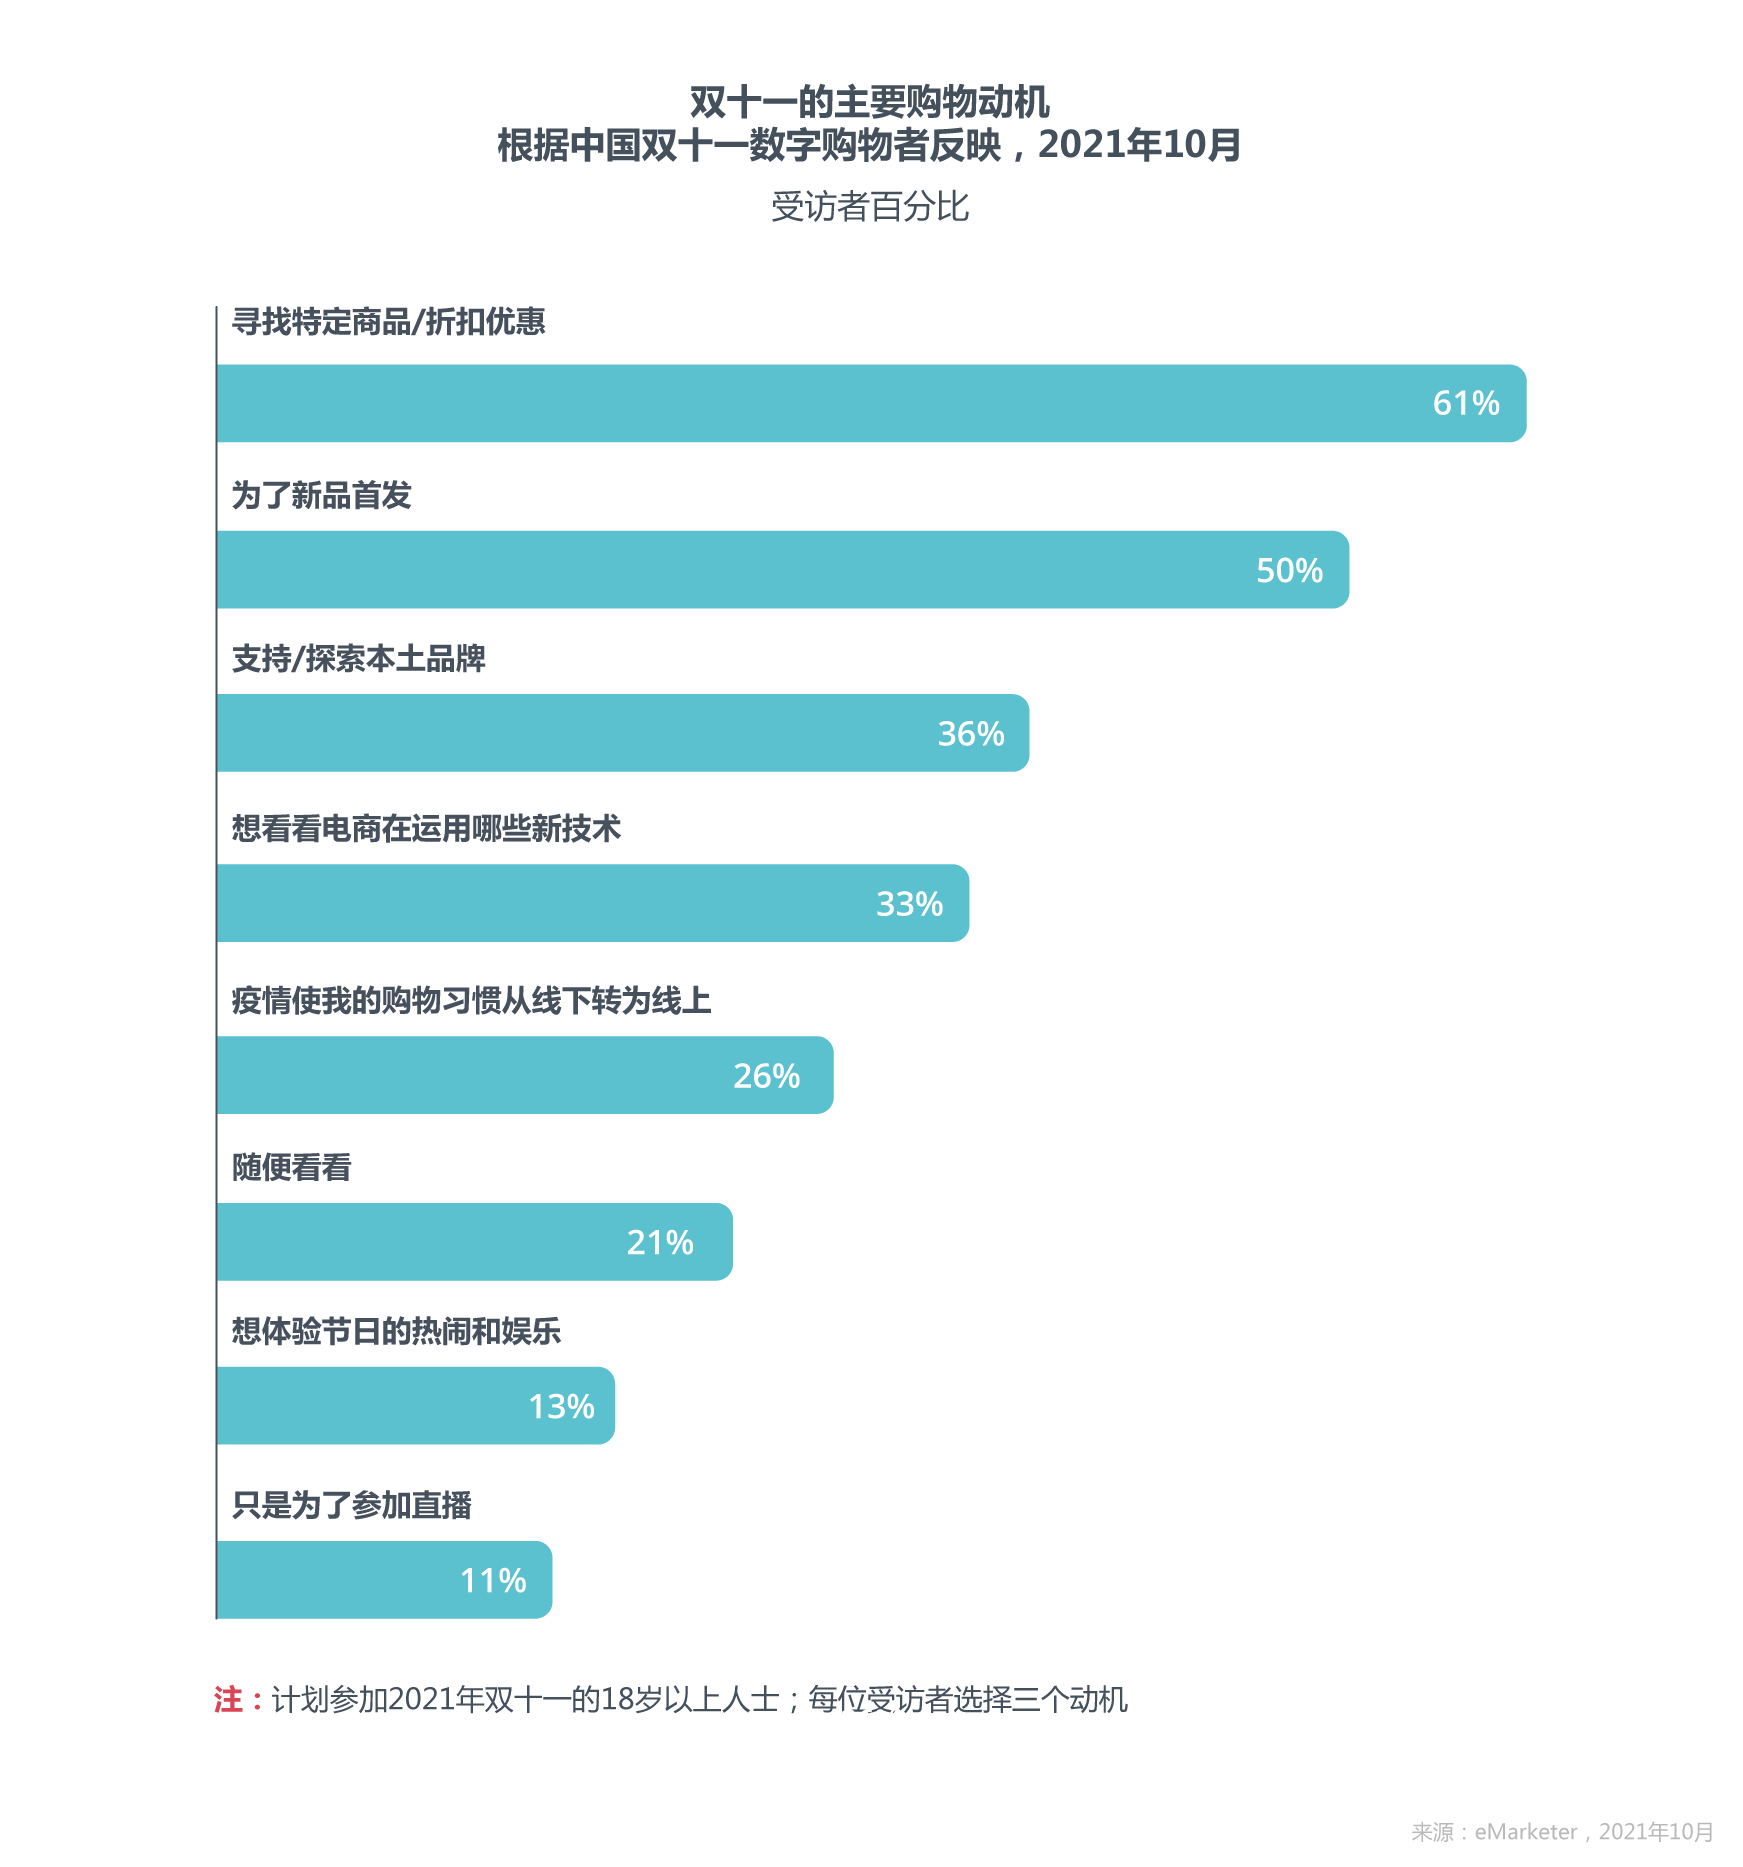 双十一的主要购物动机 根据中国双十一数字购物者反映